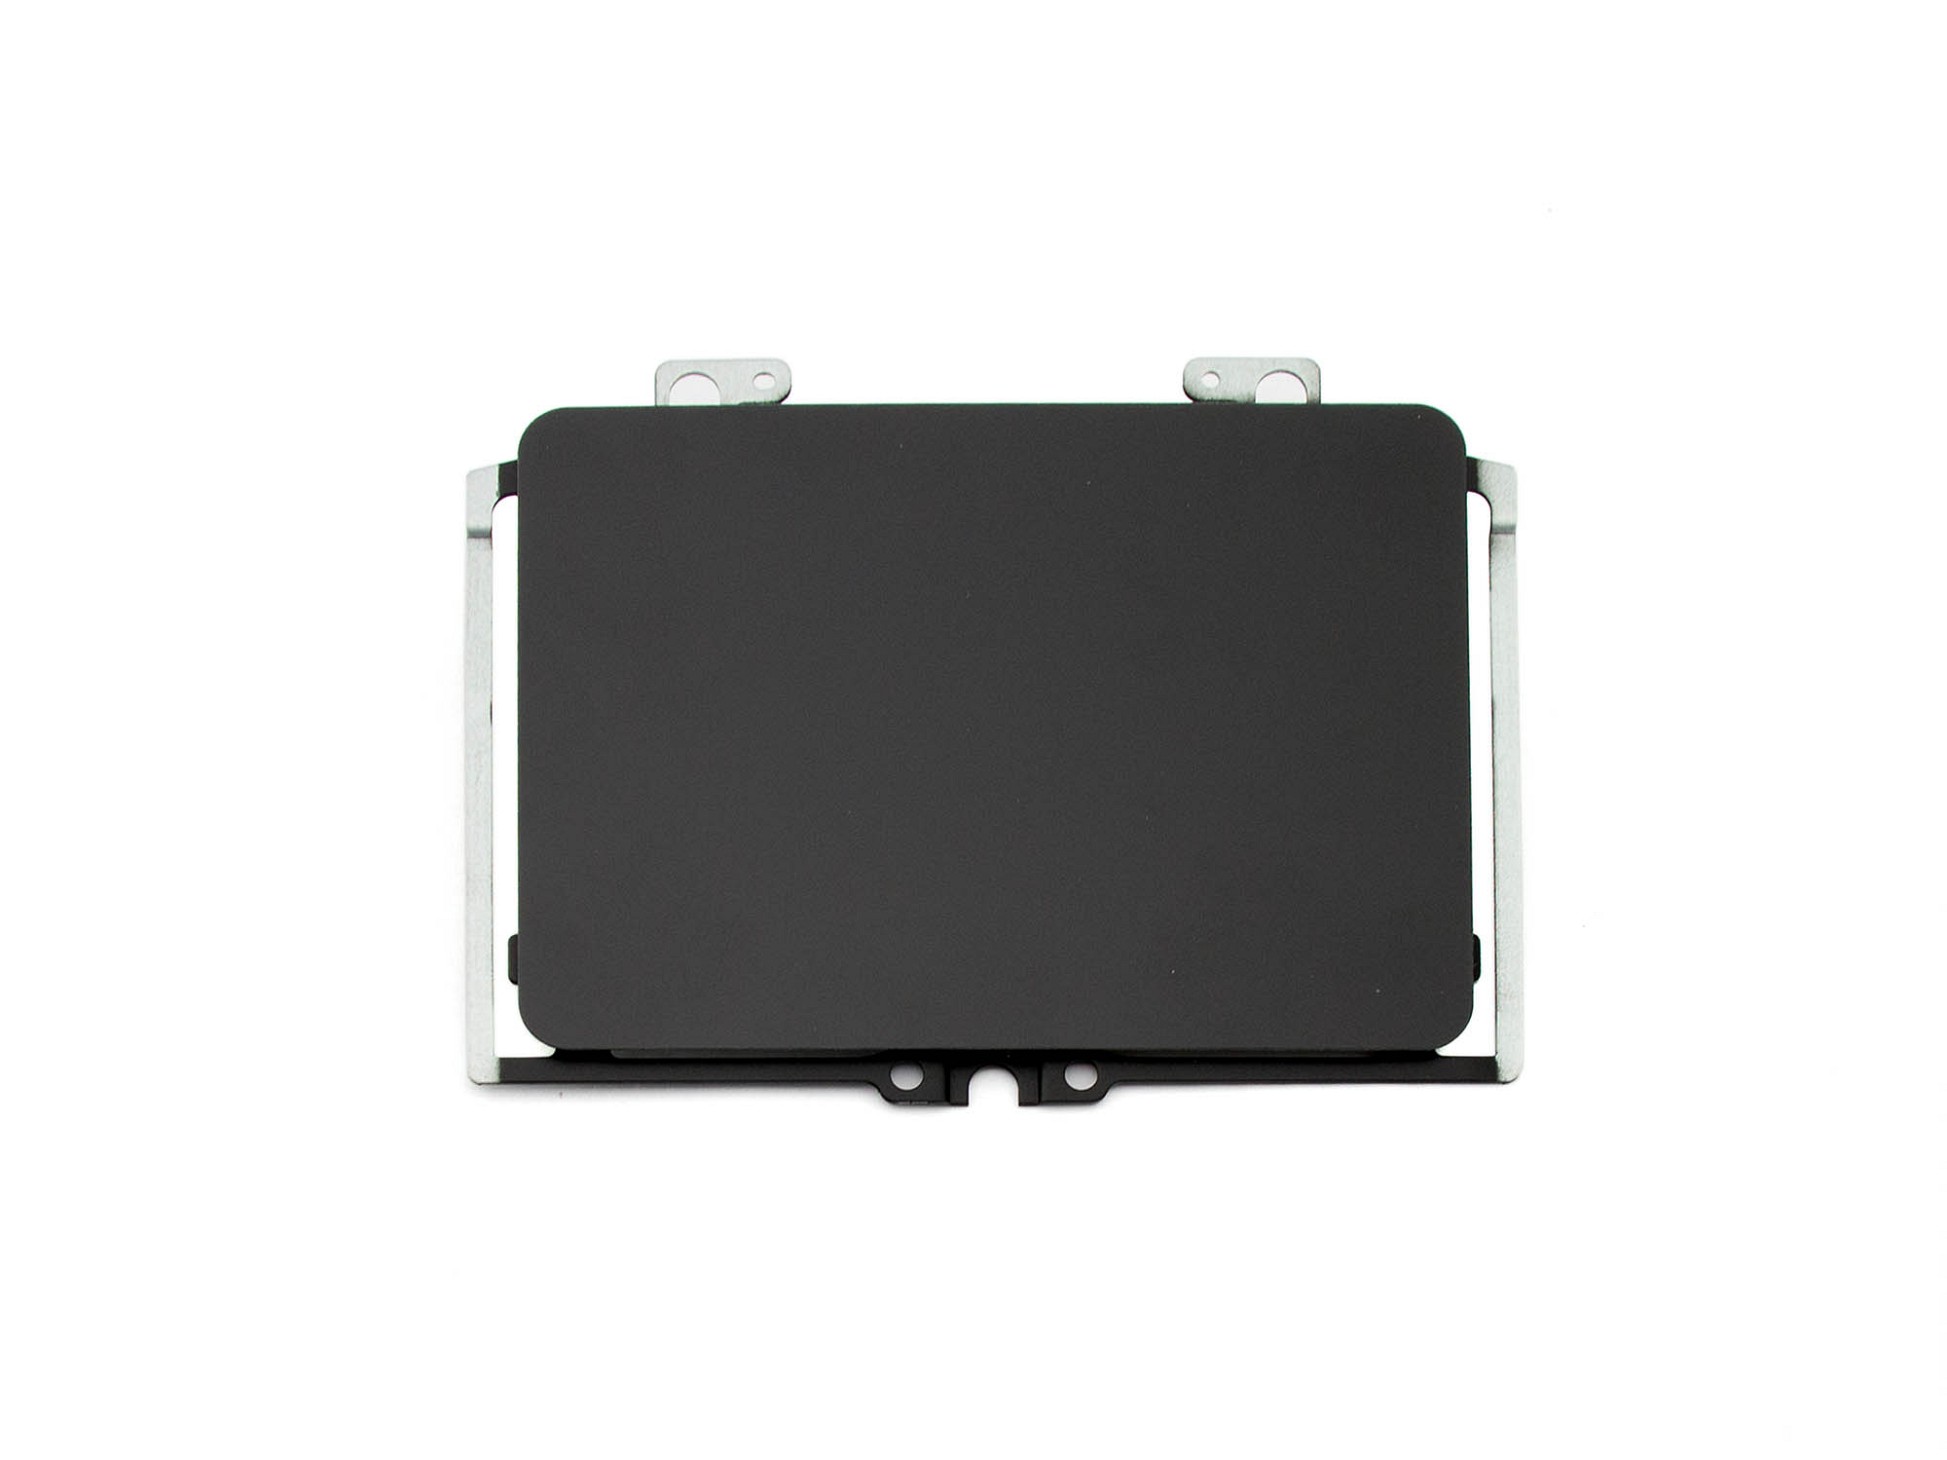 Acer 920-002755-07 RevA Touchpad Board (schwarz glänzend)